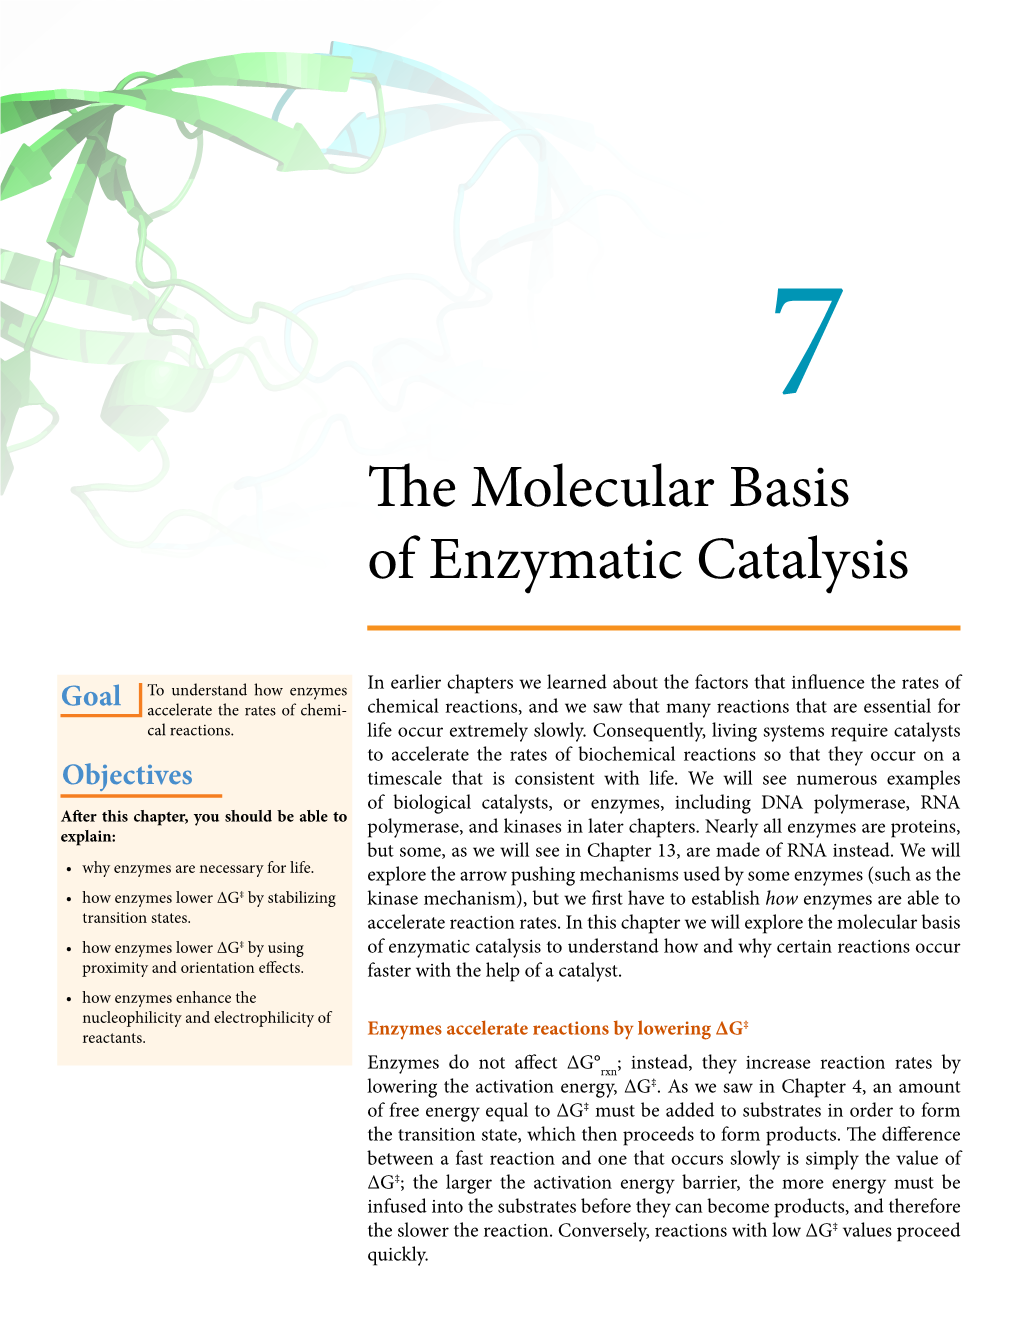 The Molecular Basis of Enzymatic Catalysis